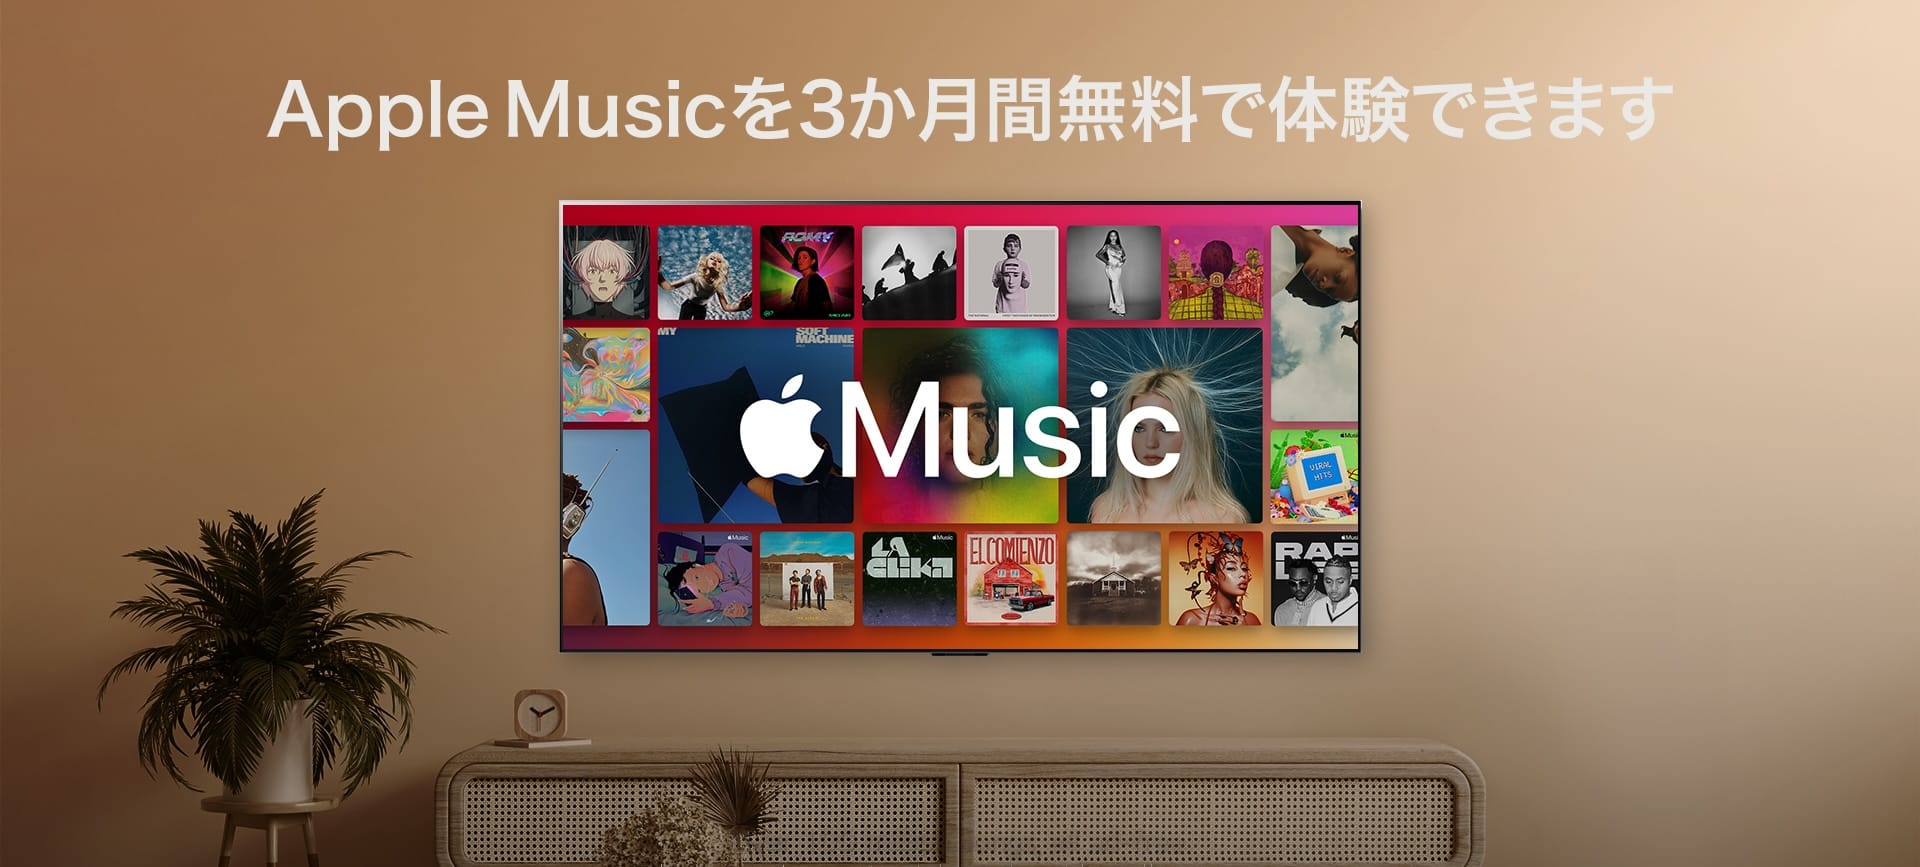 LGのスマートテレビがApple MusicのDolby Atmosに対応　「Apple Music 3ヵ月無料キャンペーン」開始